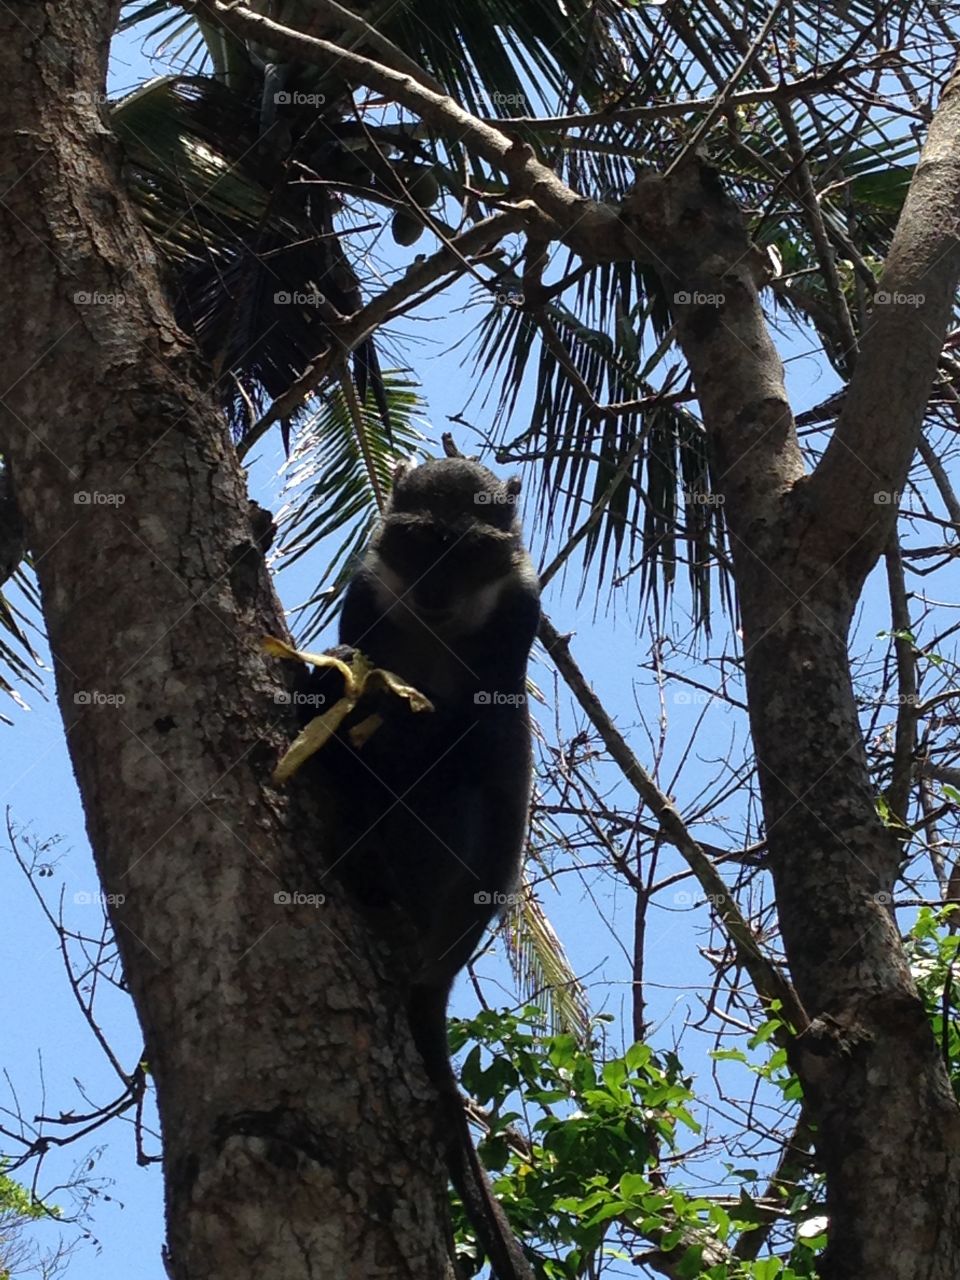 A monkey on a tree in Kenya